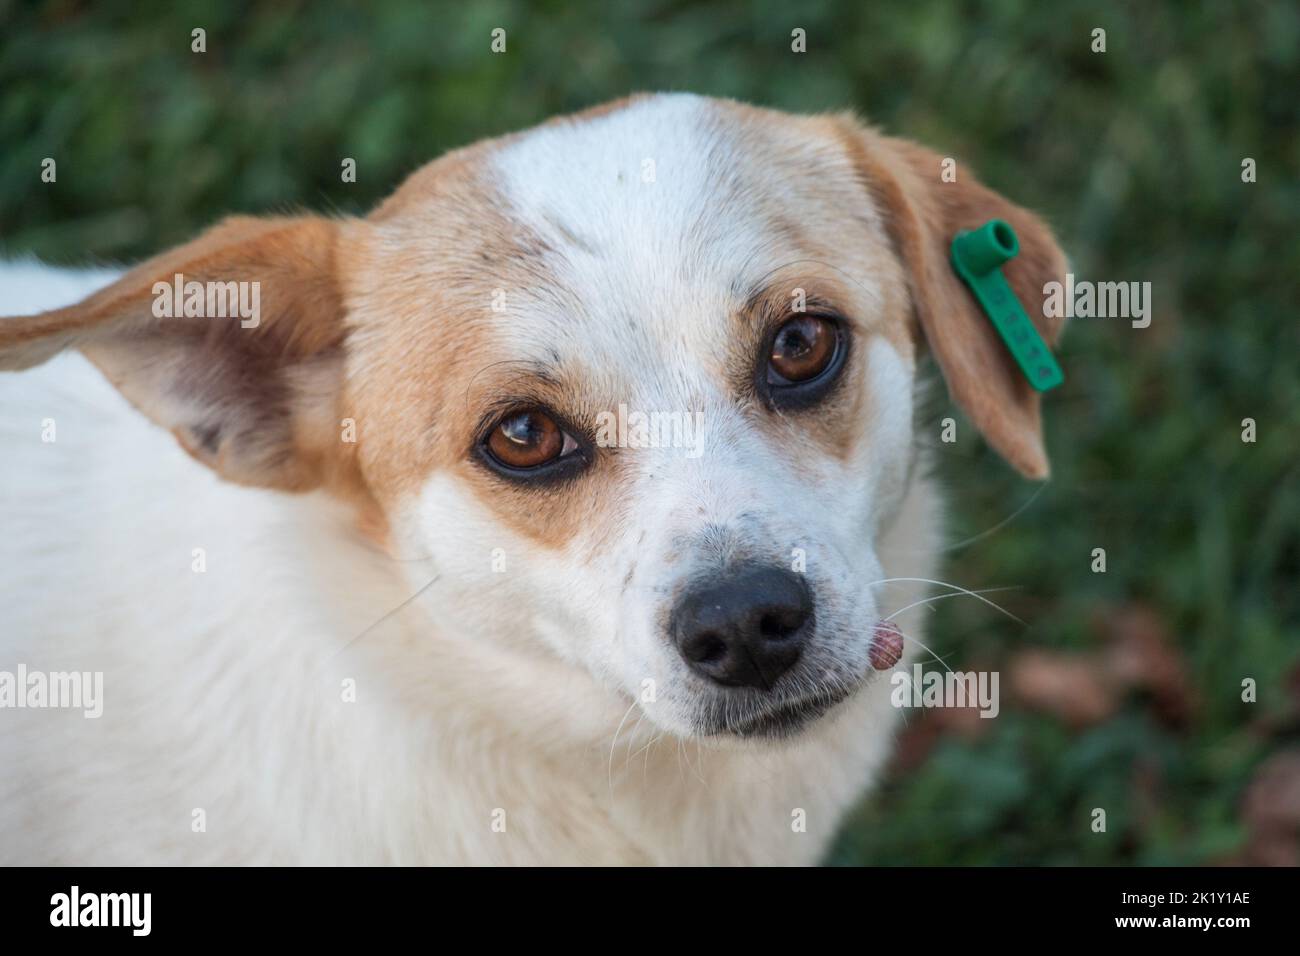 Ein kleiner süßer Hund mit einem grünen Ohrring im Ohr, selektiver Fokus Stockfoto